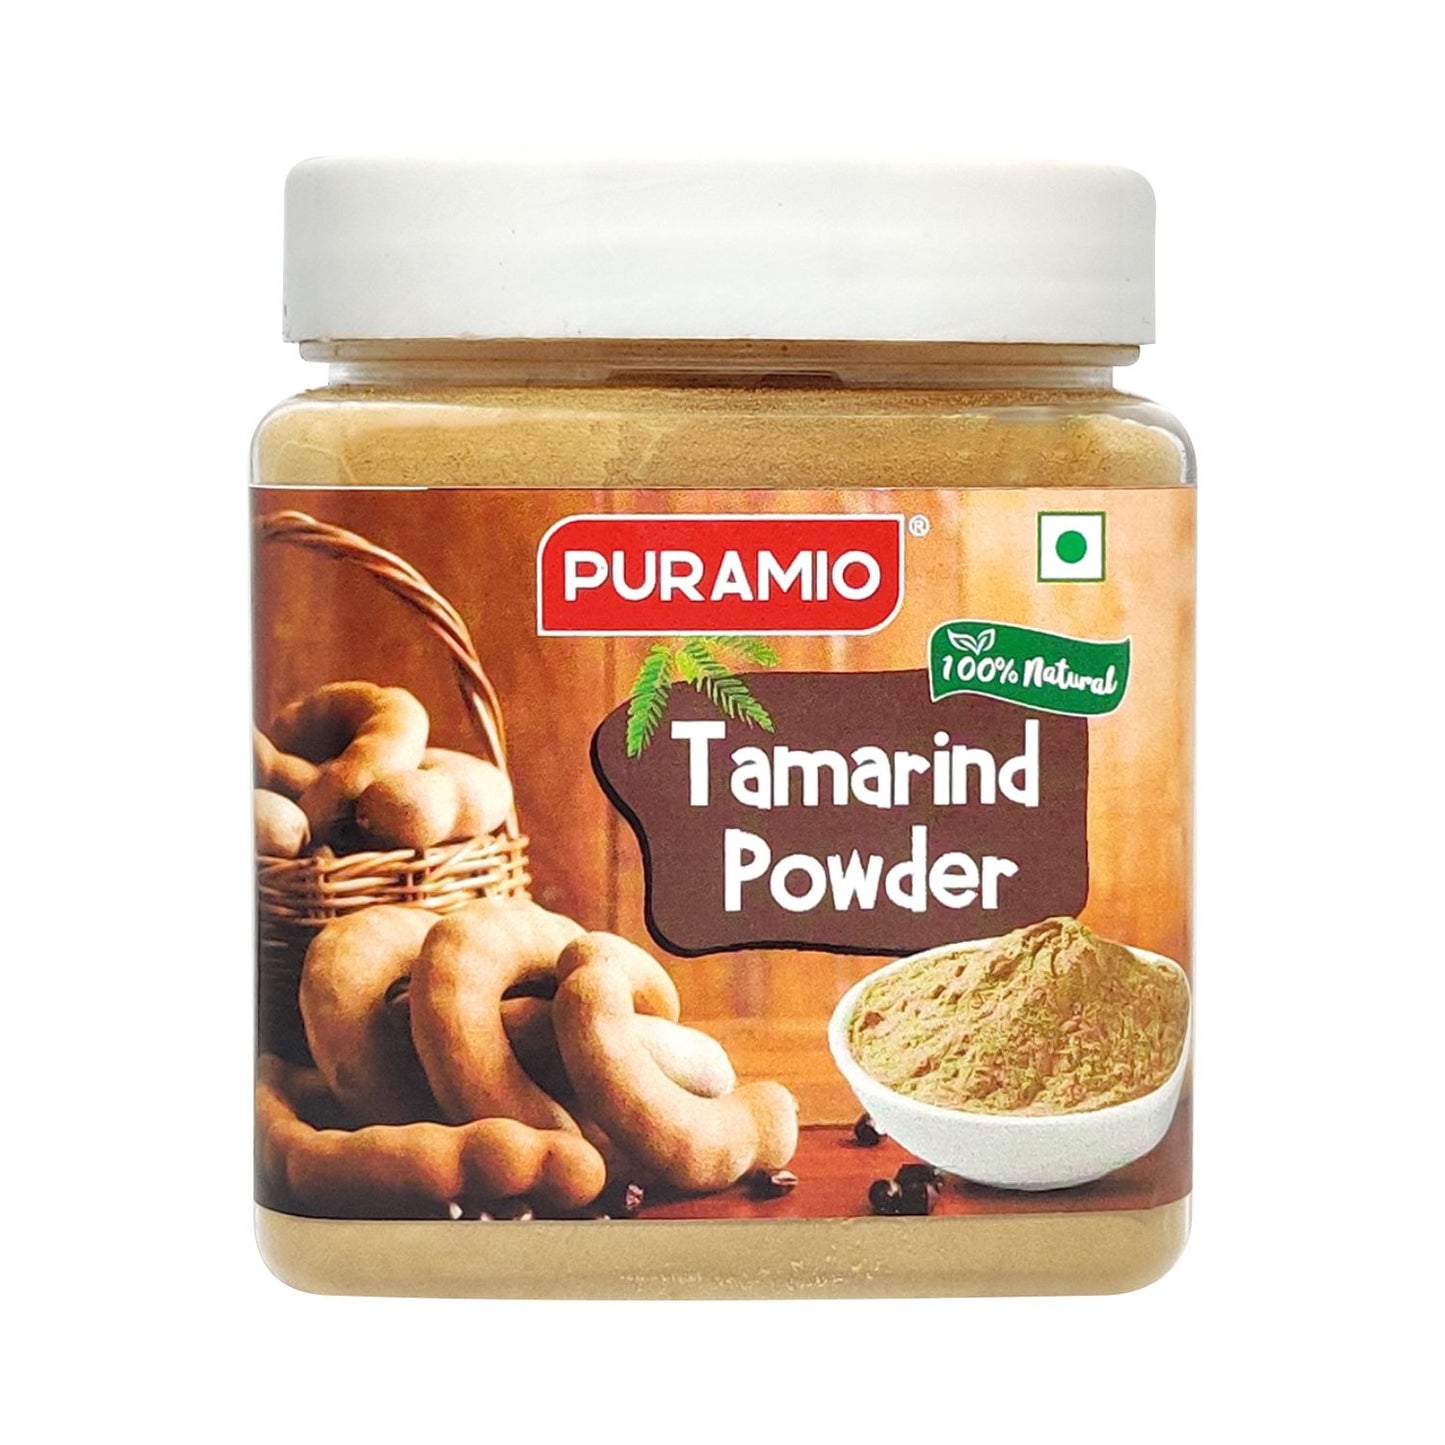 Puramio [100% Natural] Tamarind (Imli) Powder